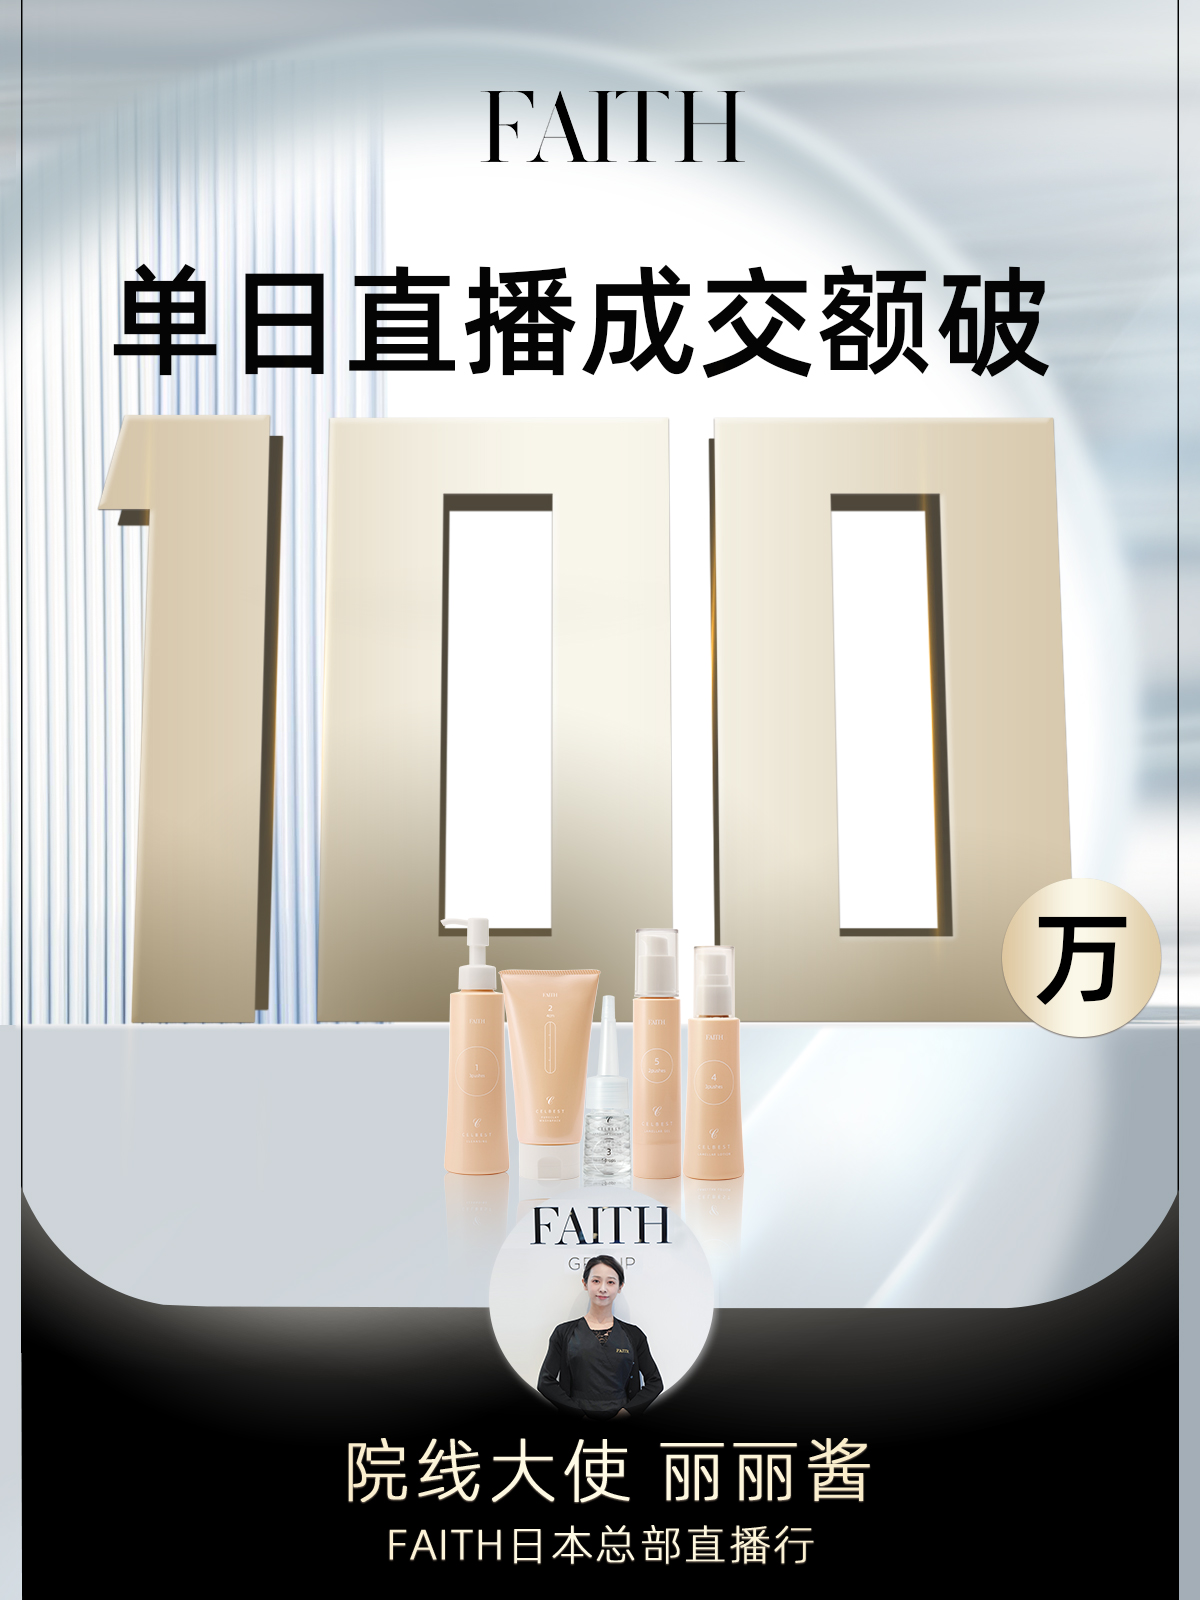 天娱数科数据驱动“品效销”发展 旗下美妆品牌FAITH日本总部直播单日销售破百万